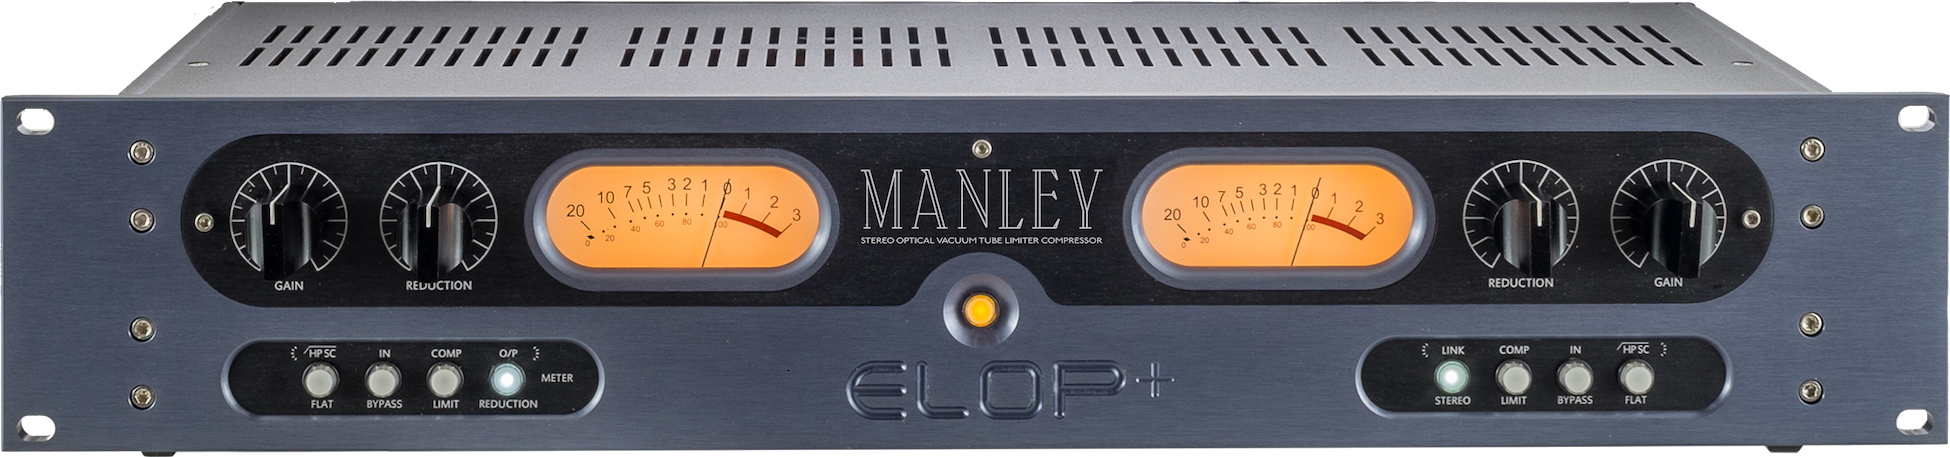 Manley Elop+ - Compresor / Limiter / Gate - Variation 1